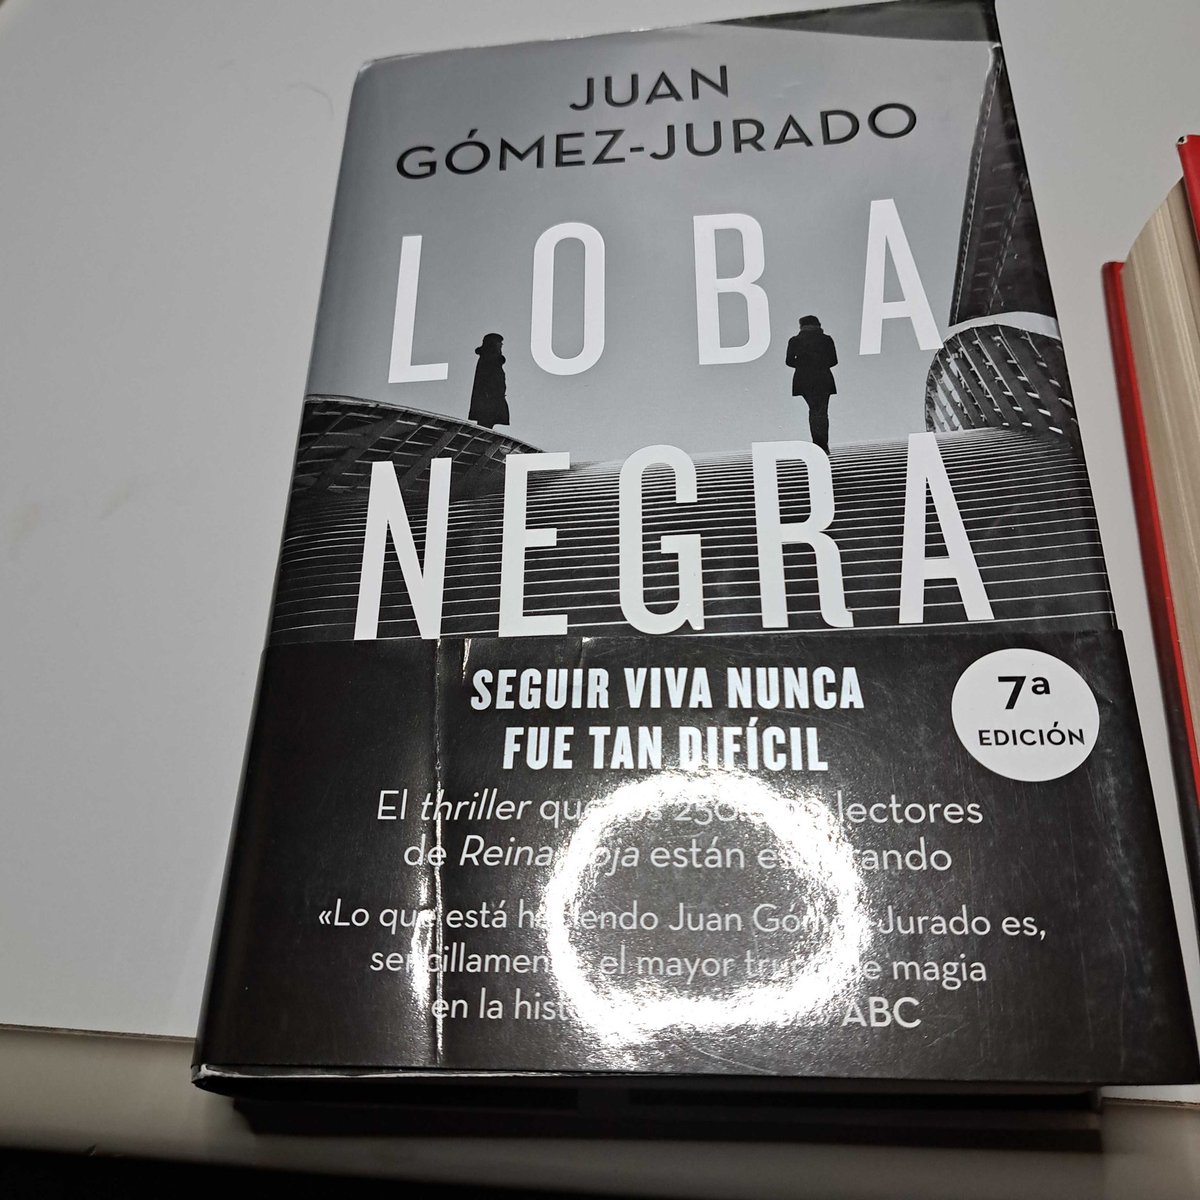 #LobaNegra, el segundo libro de la trilogía #ReinaRoja finiquitado, también en 6 días!!! 
Hacia mucho que no me enganchaba tanto un libro, en este caso 3... @JuanGomezJurado
Deseando empezar #ReyBlanco